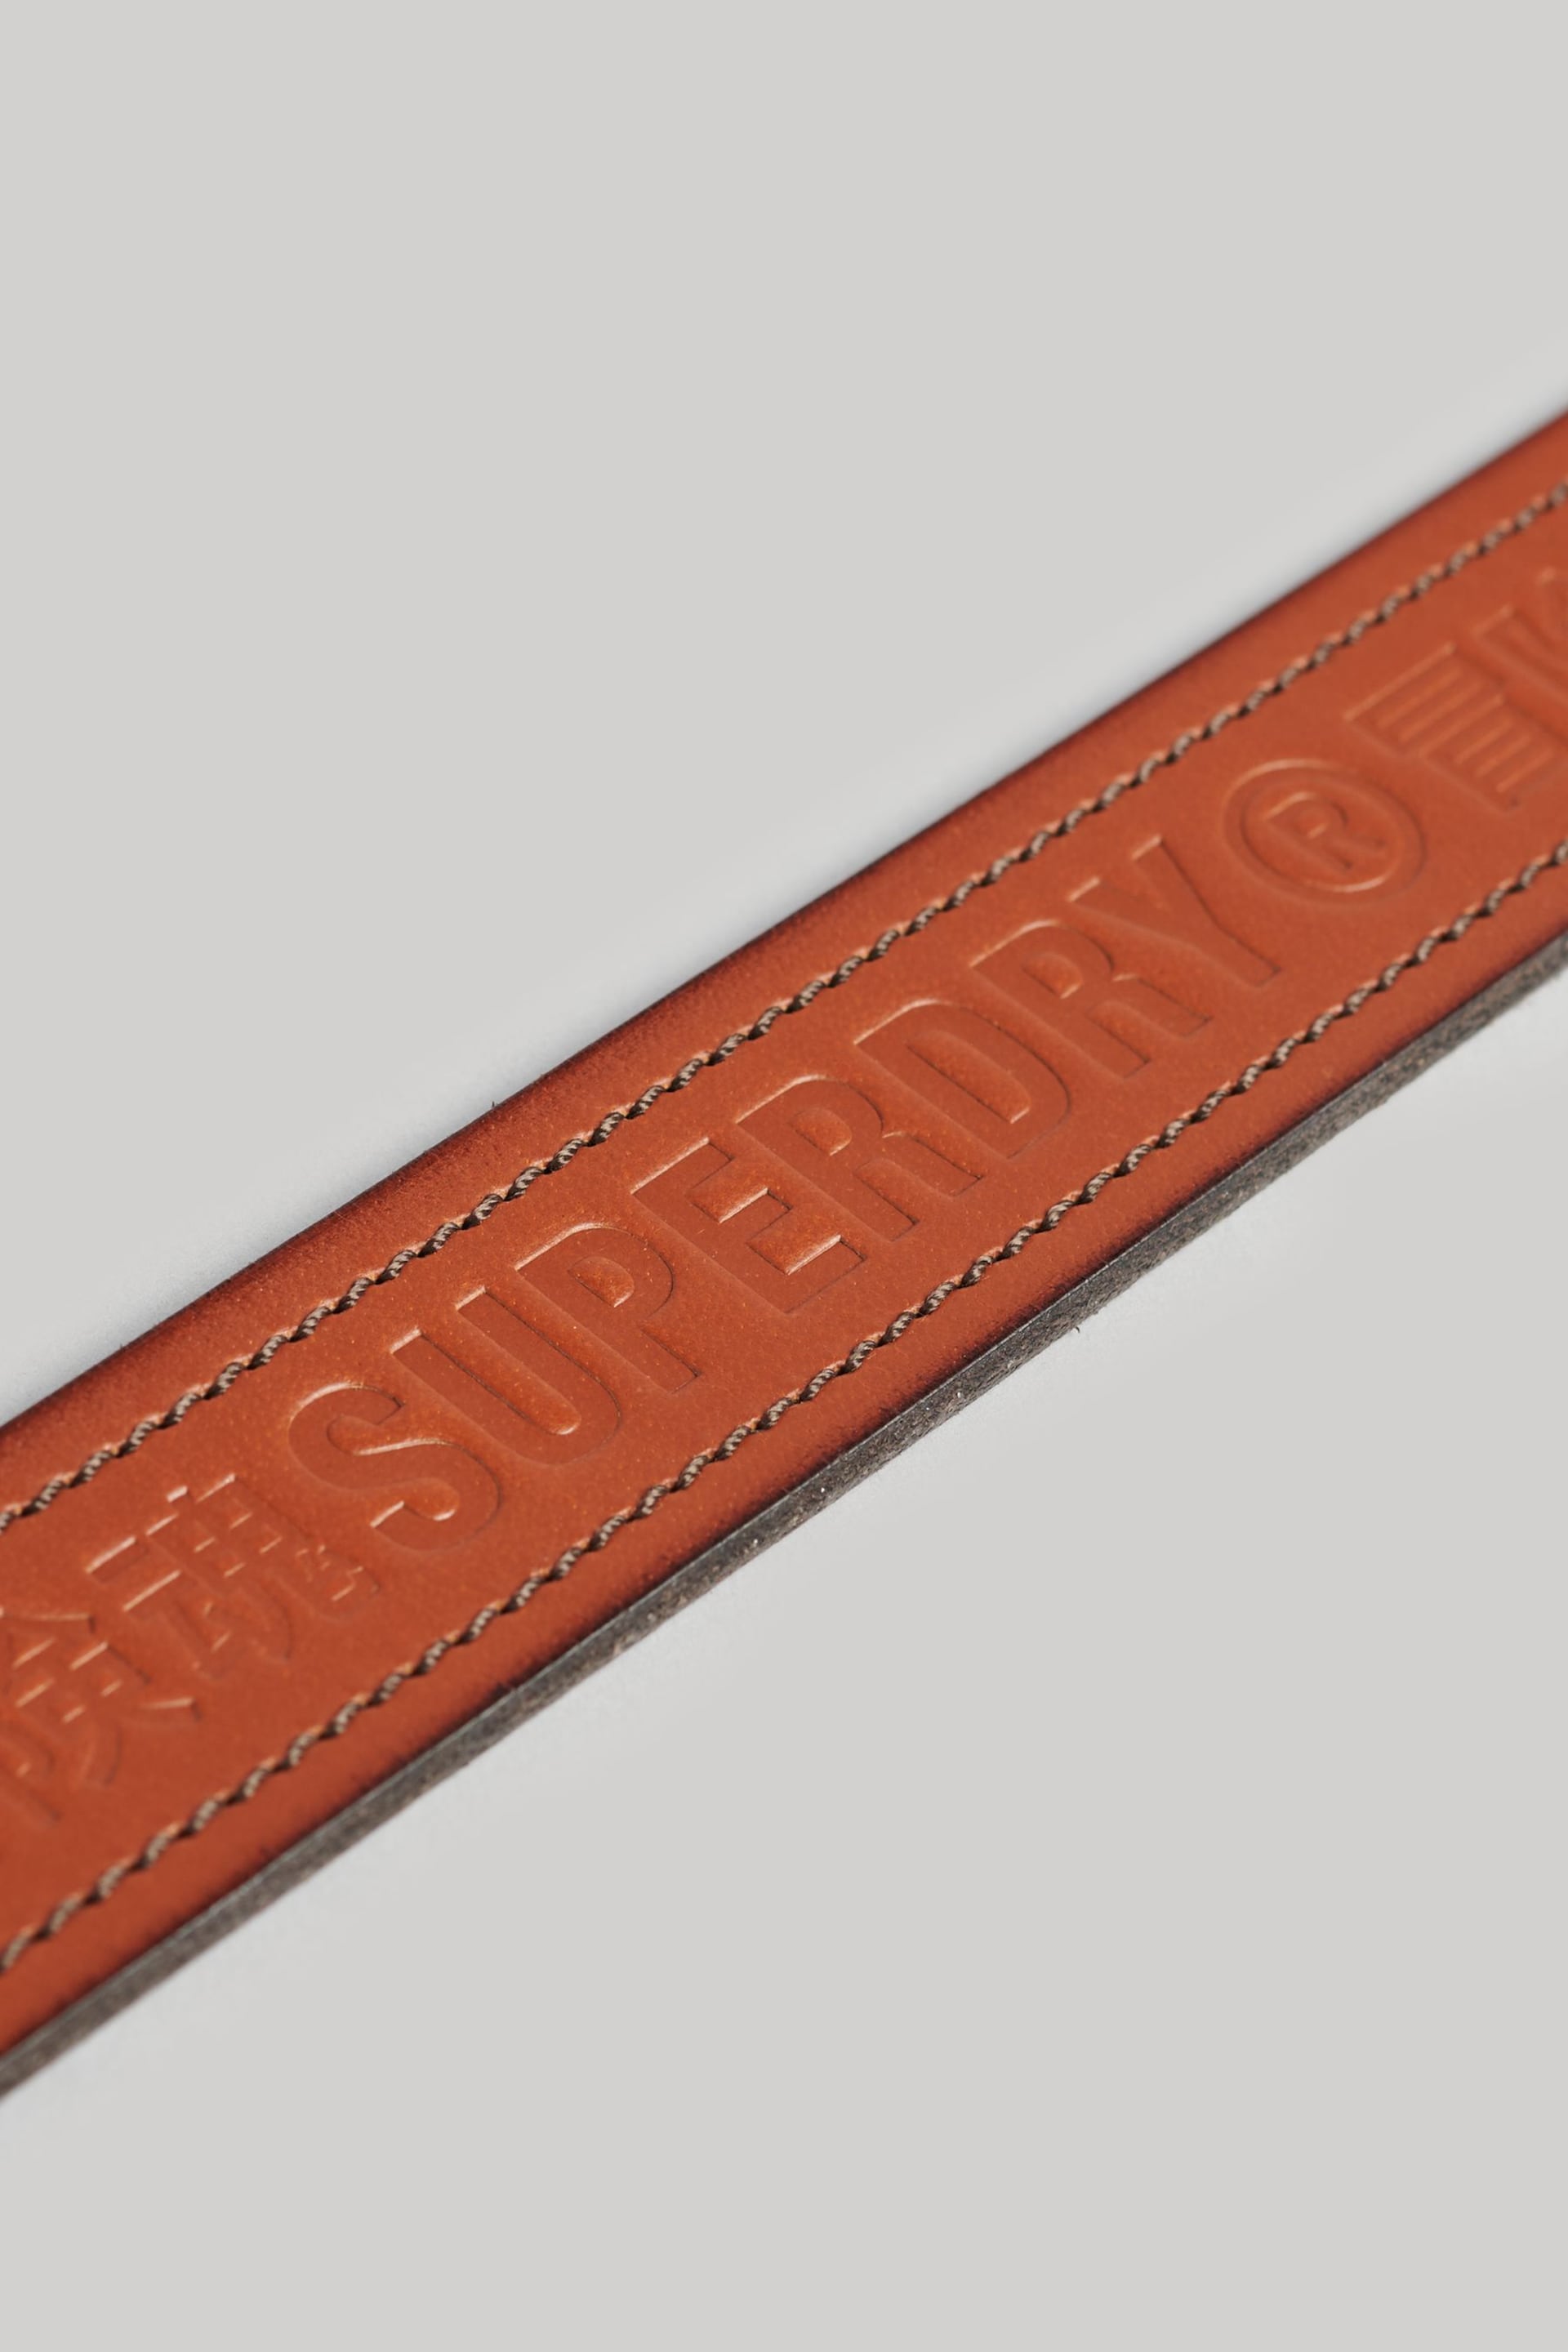 Superdry Brown Vintage Branded Belt - Image 4 of 4